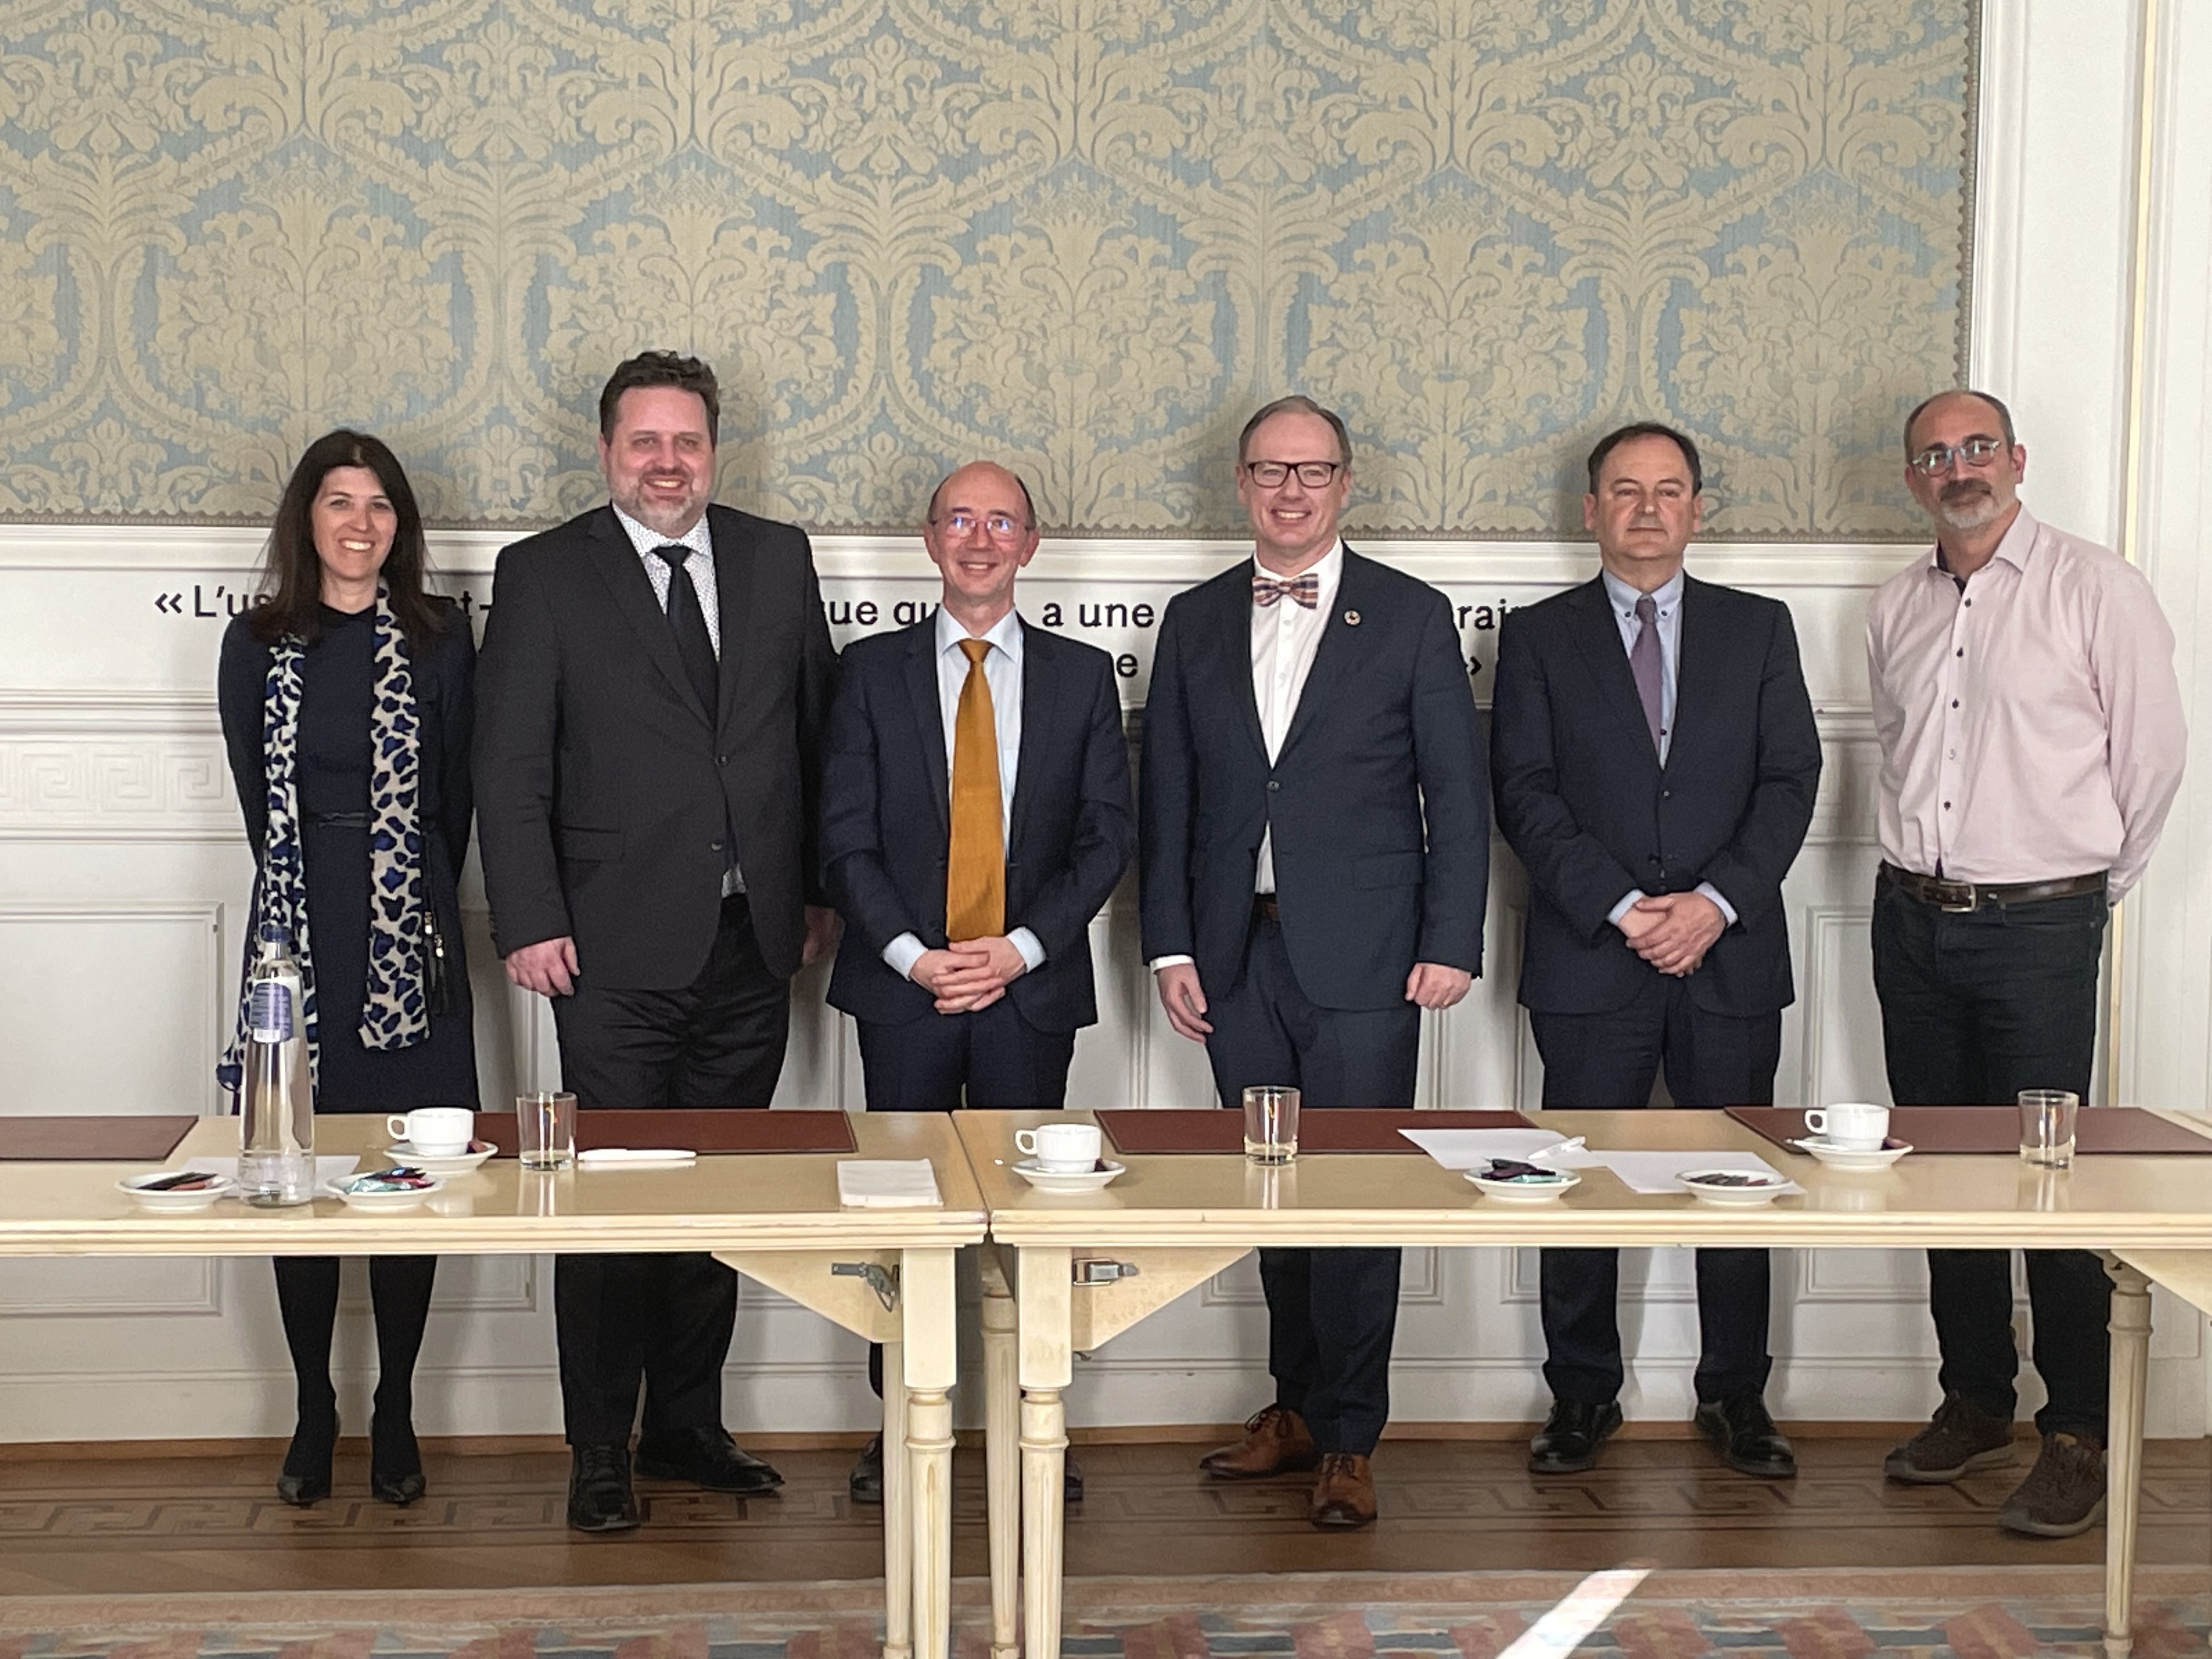 Ce mercredi 9 mars, le Parlement de la Fédération Wallonie-Bruxelles a reçu une délégation du Congrès des pouvoirs locaux et régionaux du Conseil de l’Europe.
Photo de groupe